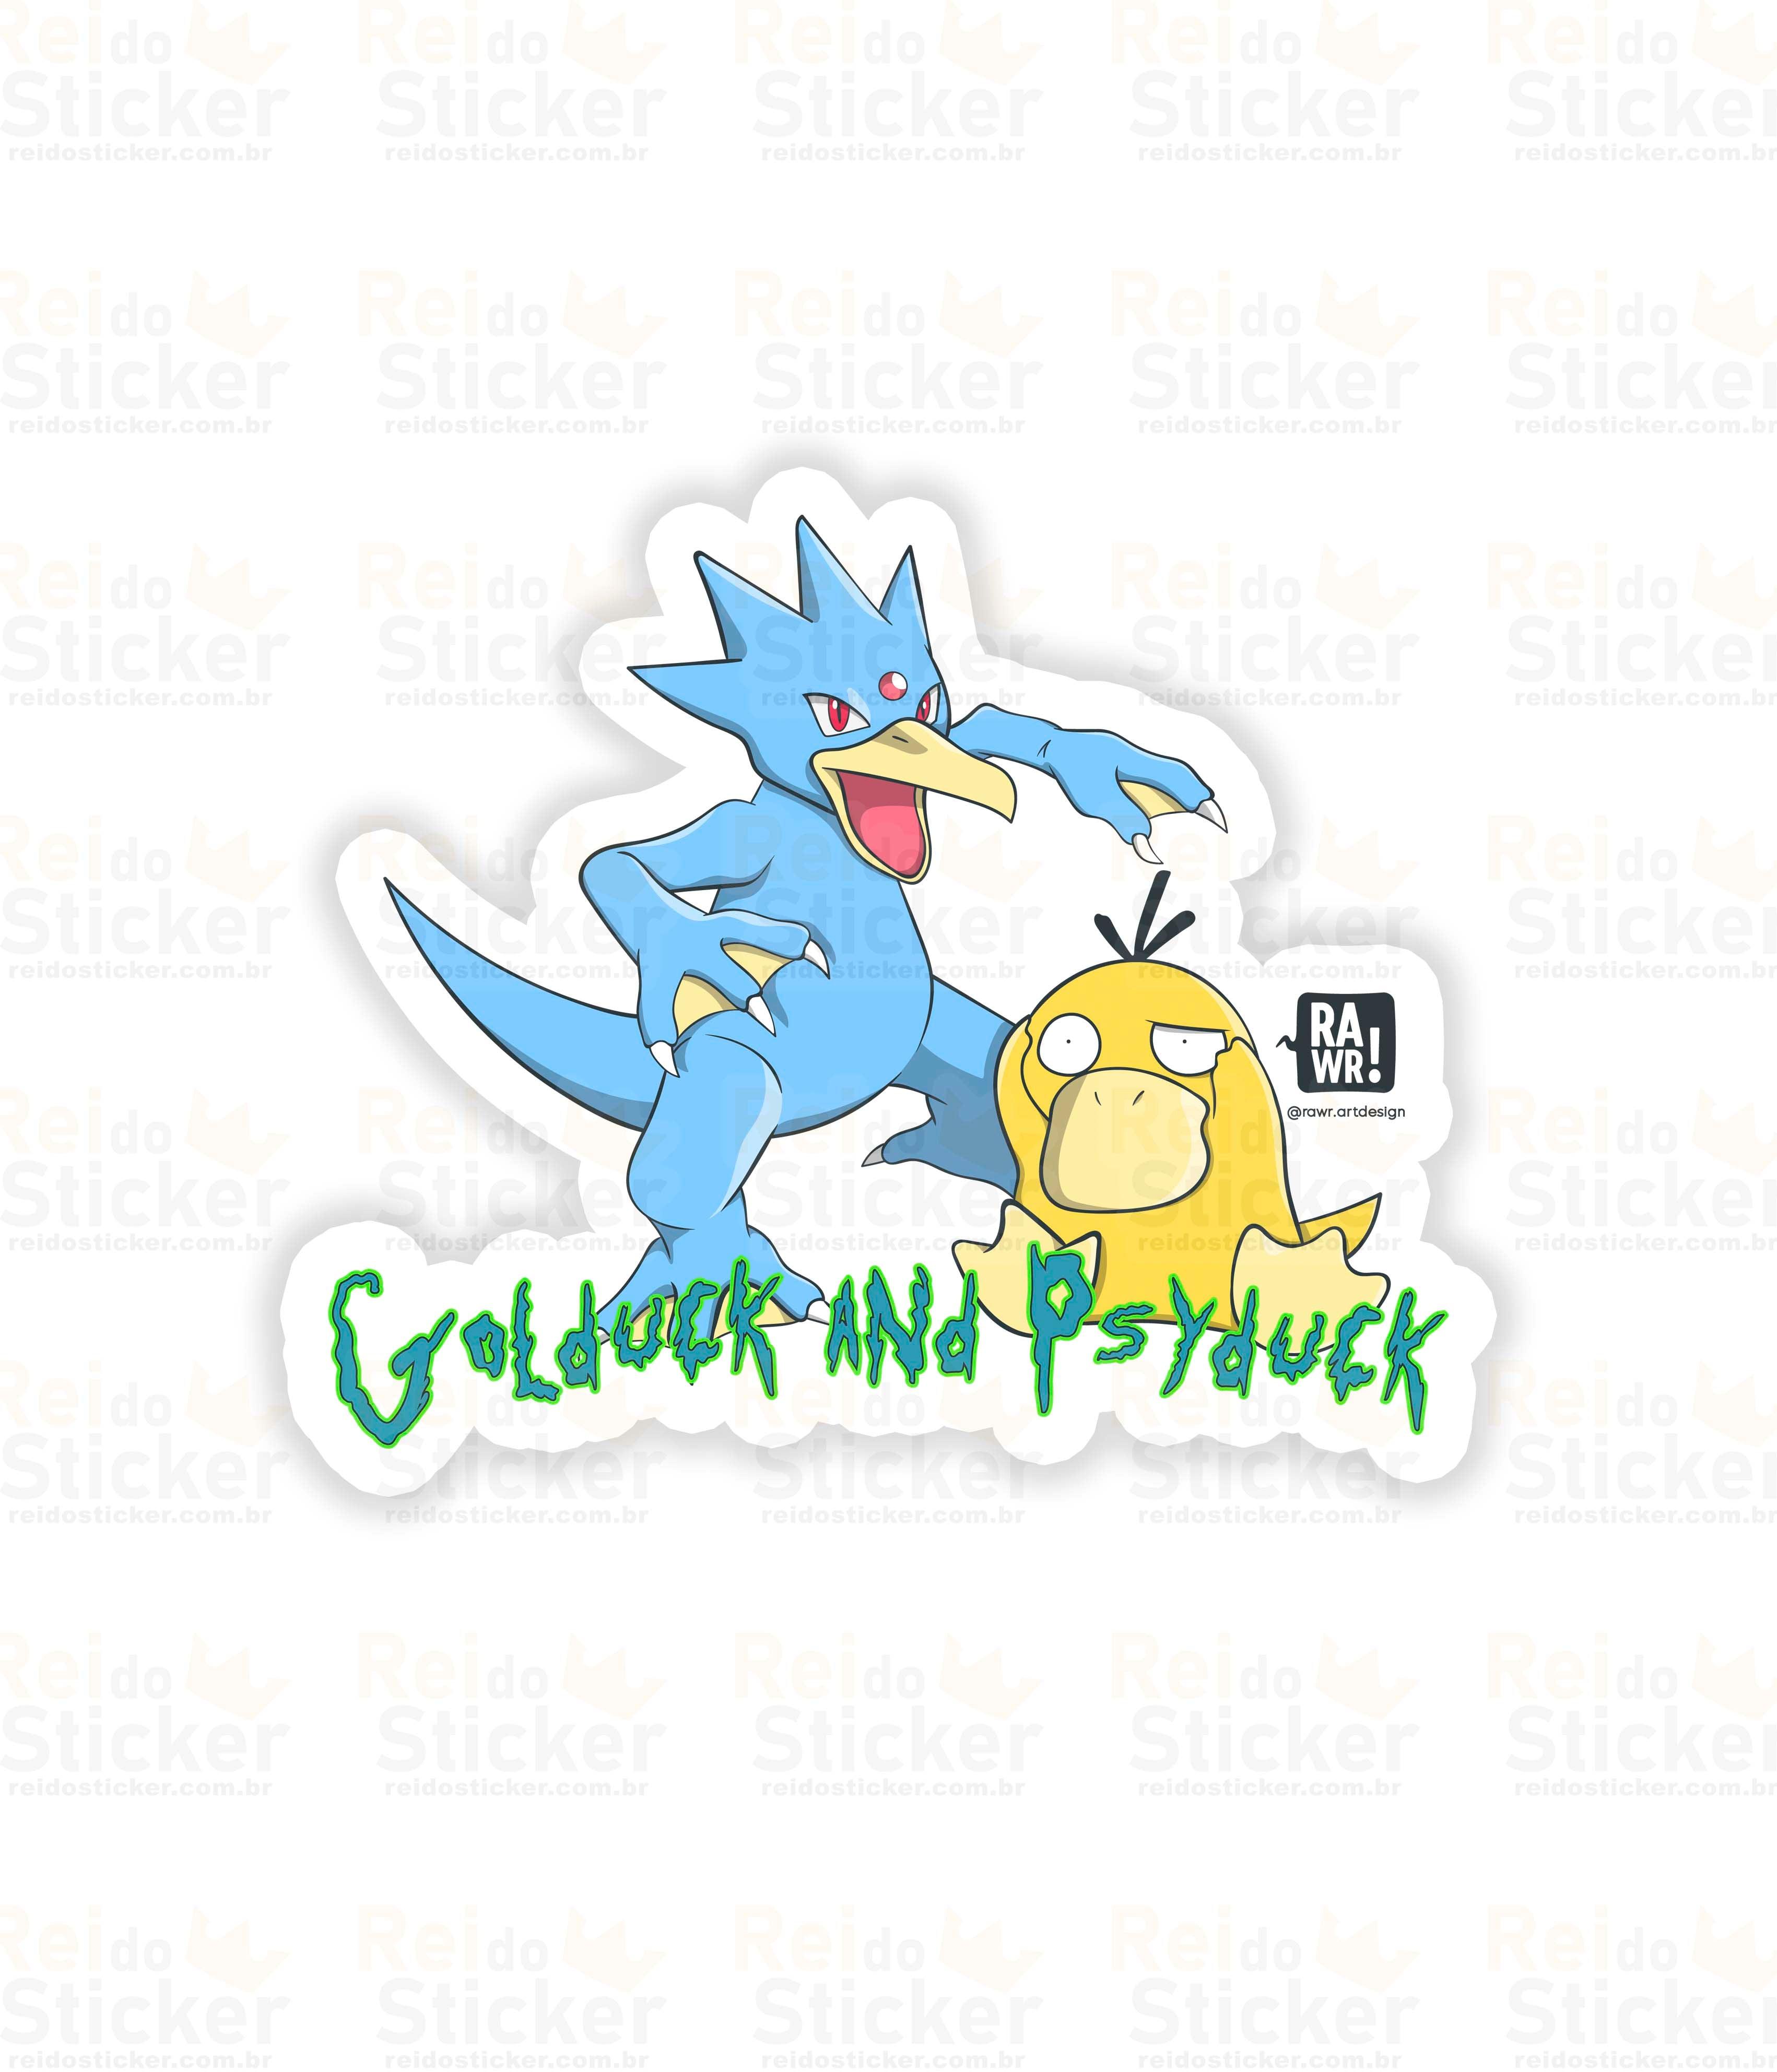 Golduckandpsyduck - Rei do Sticker